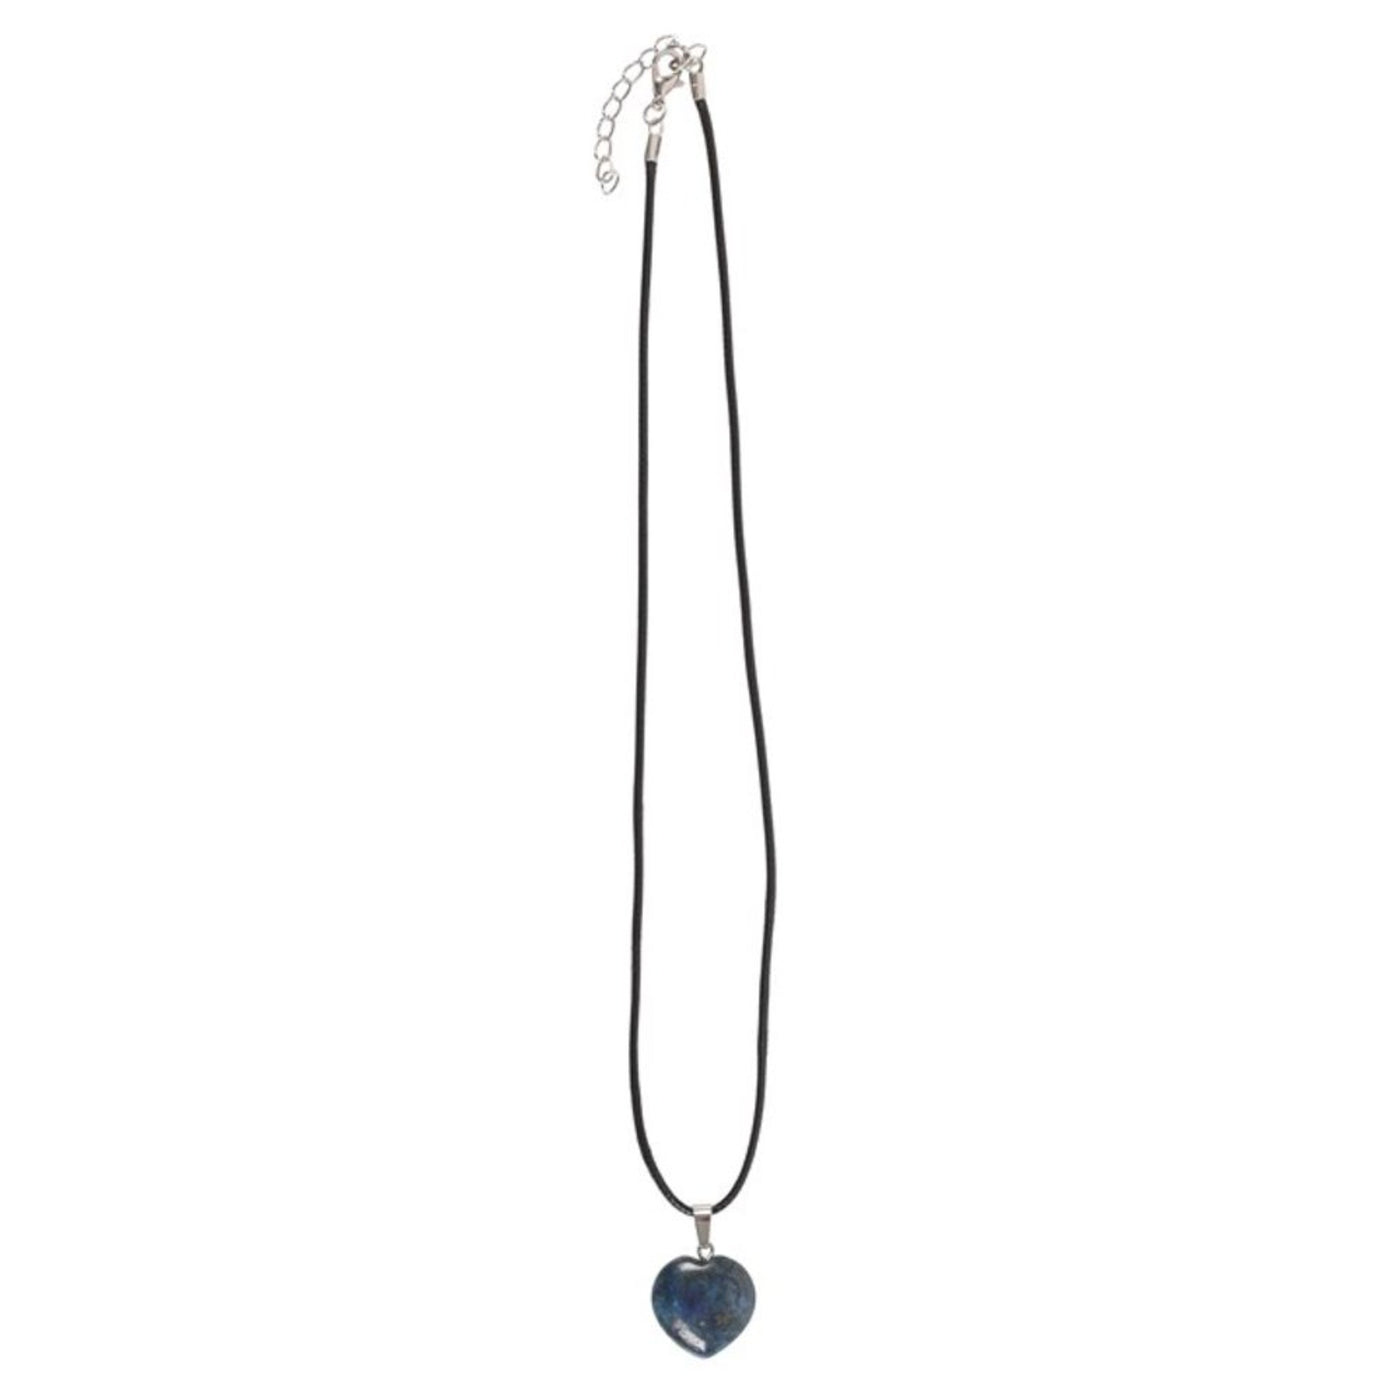 Lapis Lazuli Healing Crystal Heart Shaped Gemstone Necklace.